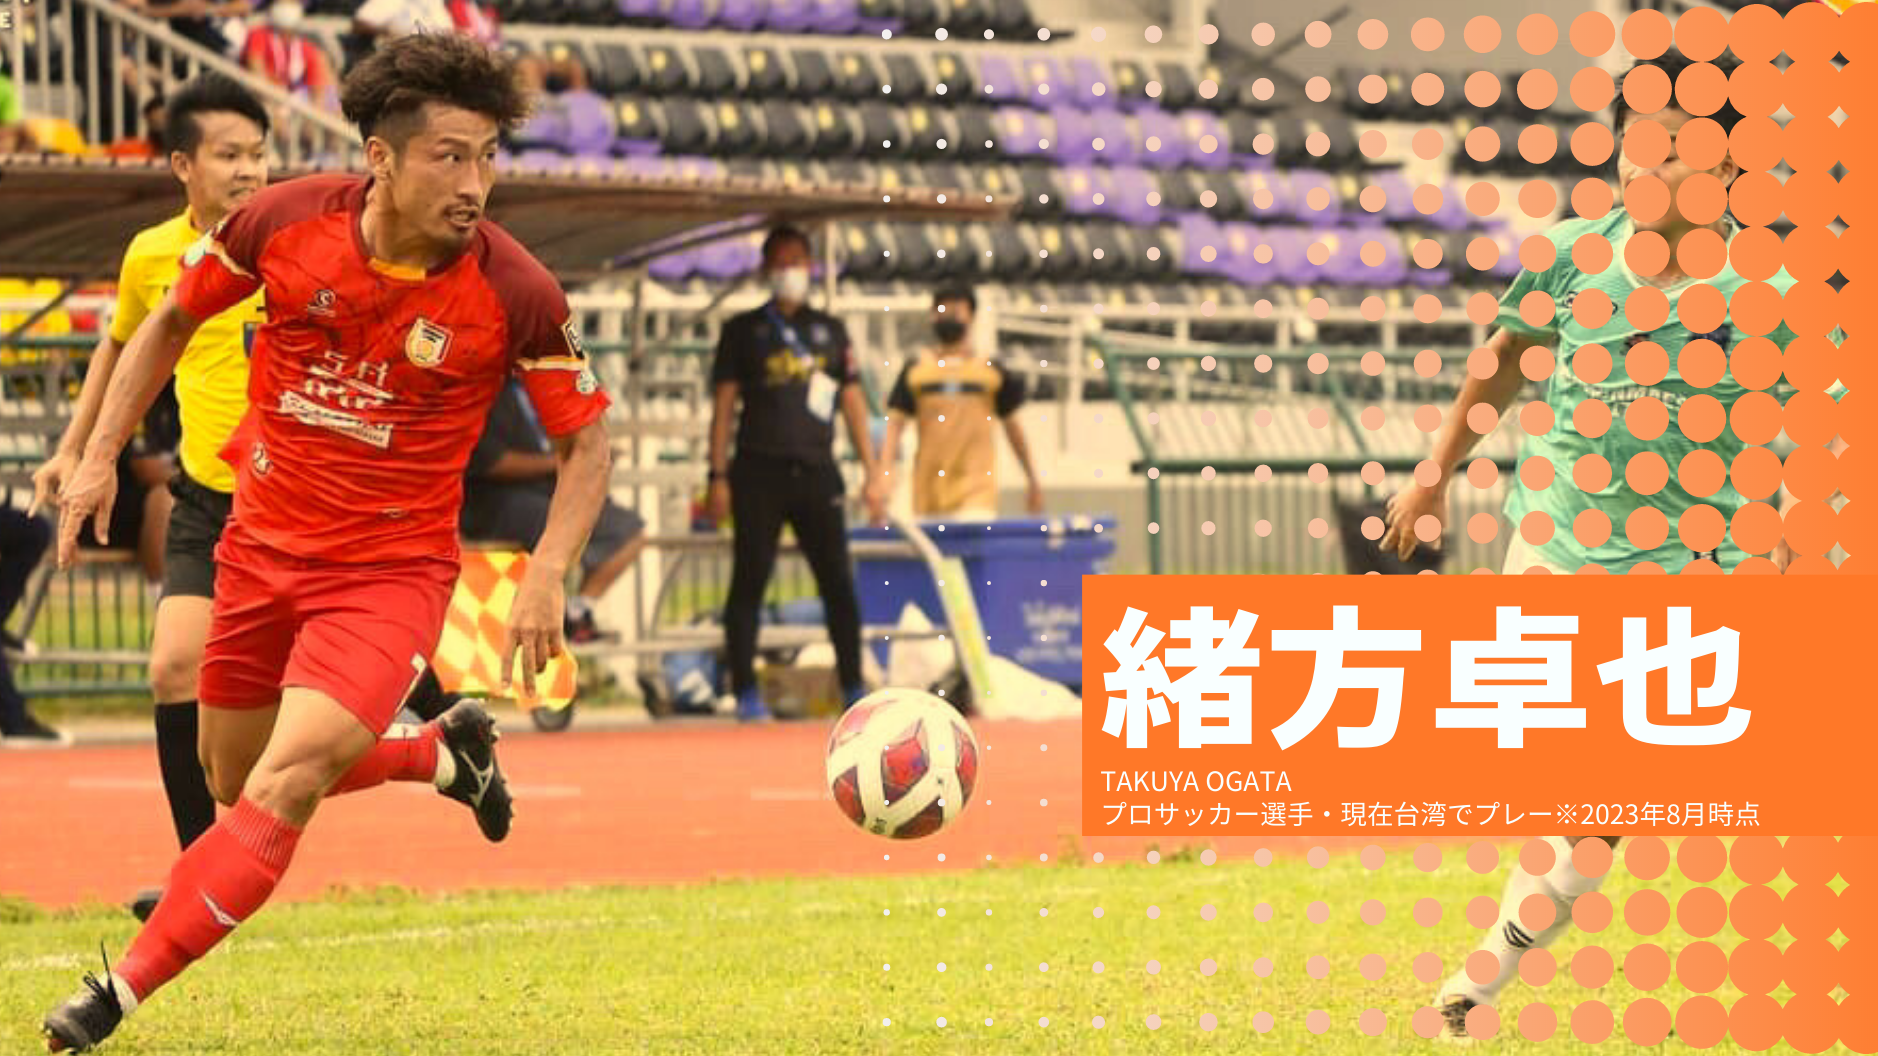 緒方卓也
TAKUYA OGATA
プロサッカー選手・現在台湾でプレー※2023年8月時点